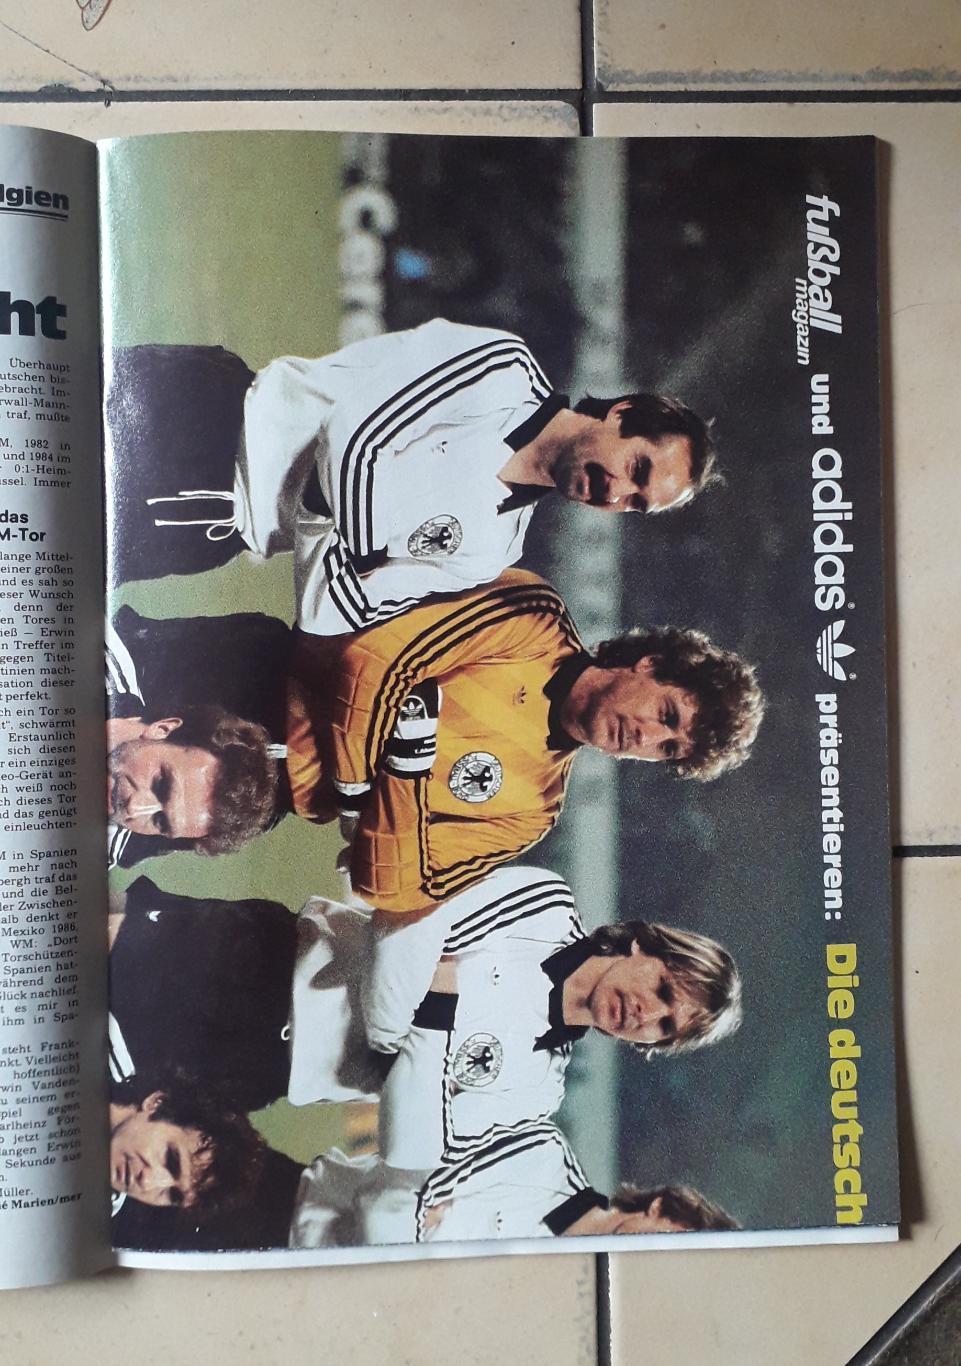 Kicker EURO 1984-Предложение для покупателя Михаил4. 2